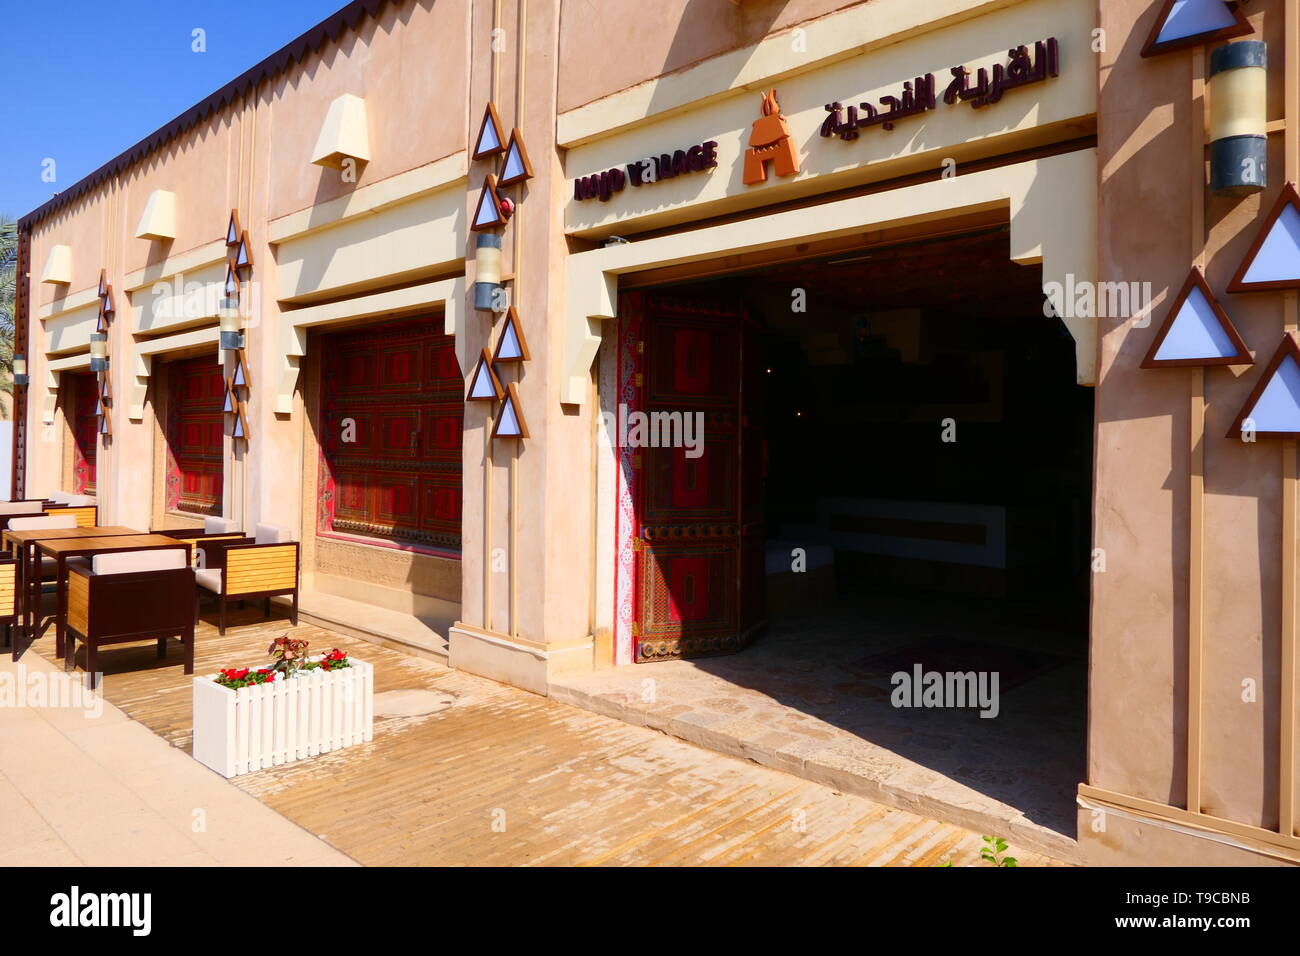 AD DIRIYAH, l'ARABIE SAOUDITE - le 17 décembre 2018 : La célèbre chaîne de restaurants Village Najd arabe avec des aliments, Direction générale de l'Ad Diriyah Banque D'Images